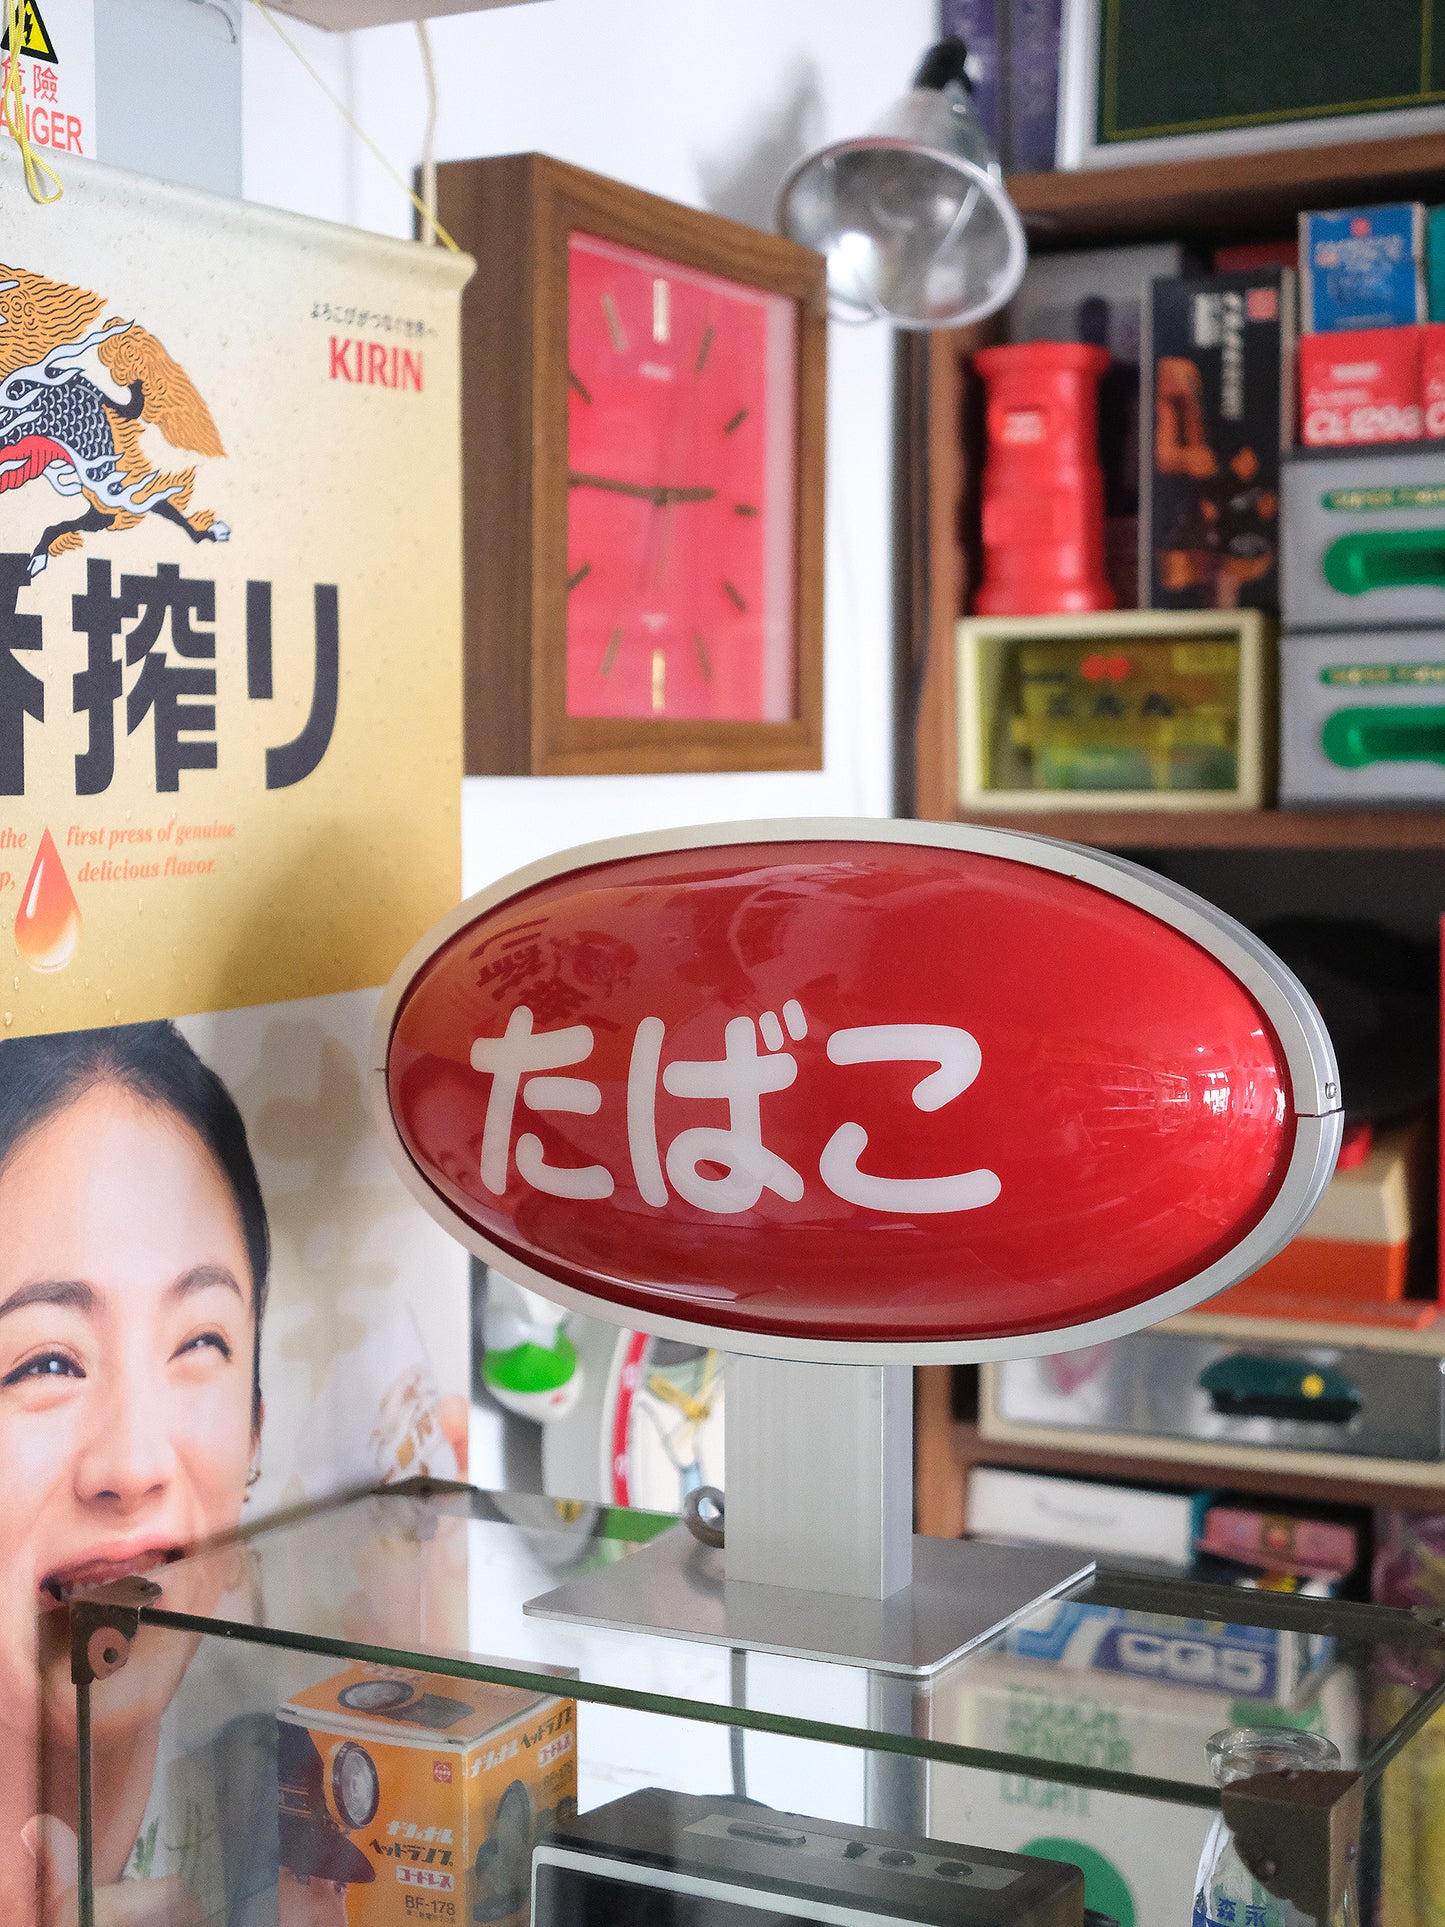 昭和 たばこ 香煙 店鋪用 電飾 電光 看板 橢圓形 燈箱